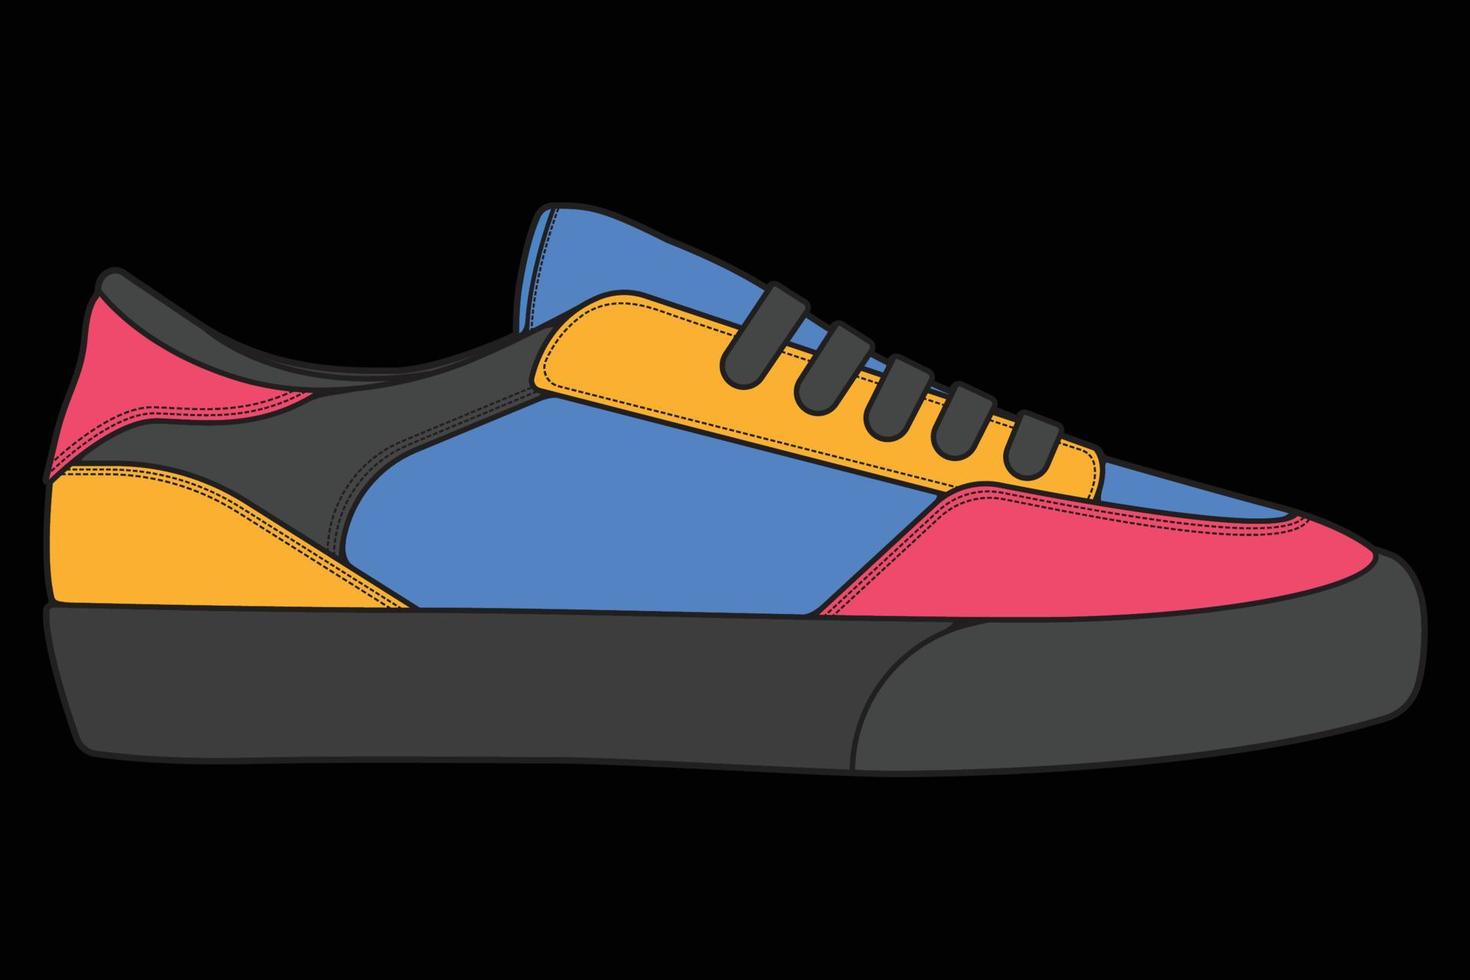 sapatos de tênis vetor para treinamento, ilustração vetorial de tênis de corrida. sapatos esportivos coloridos.